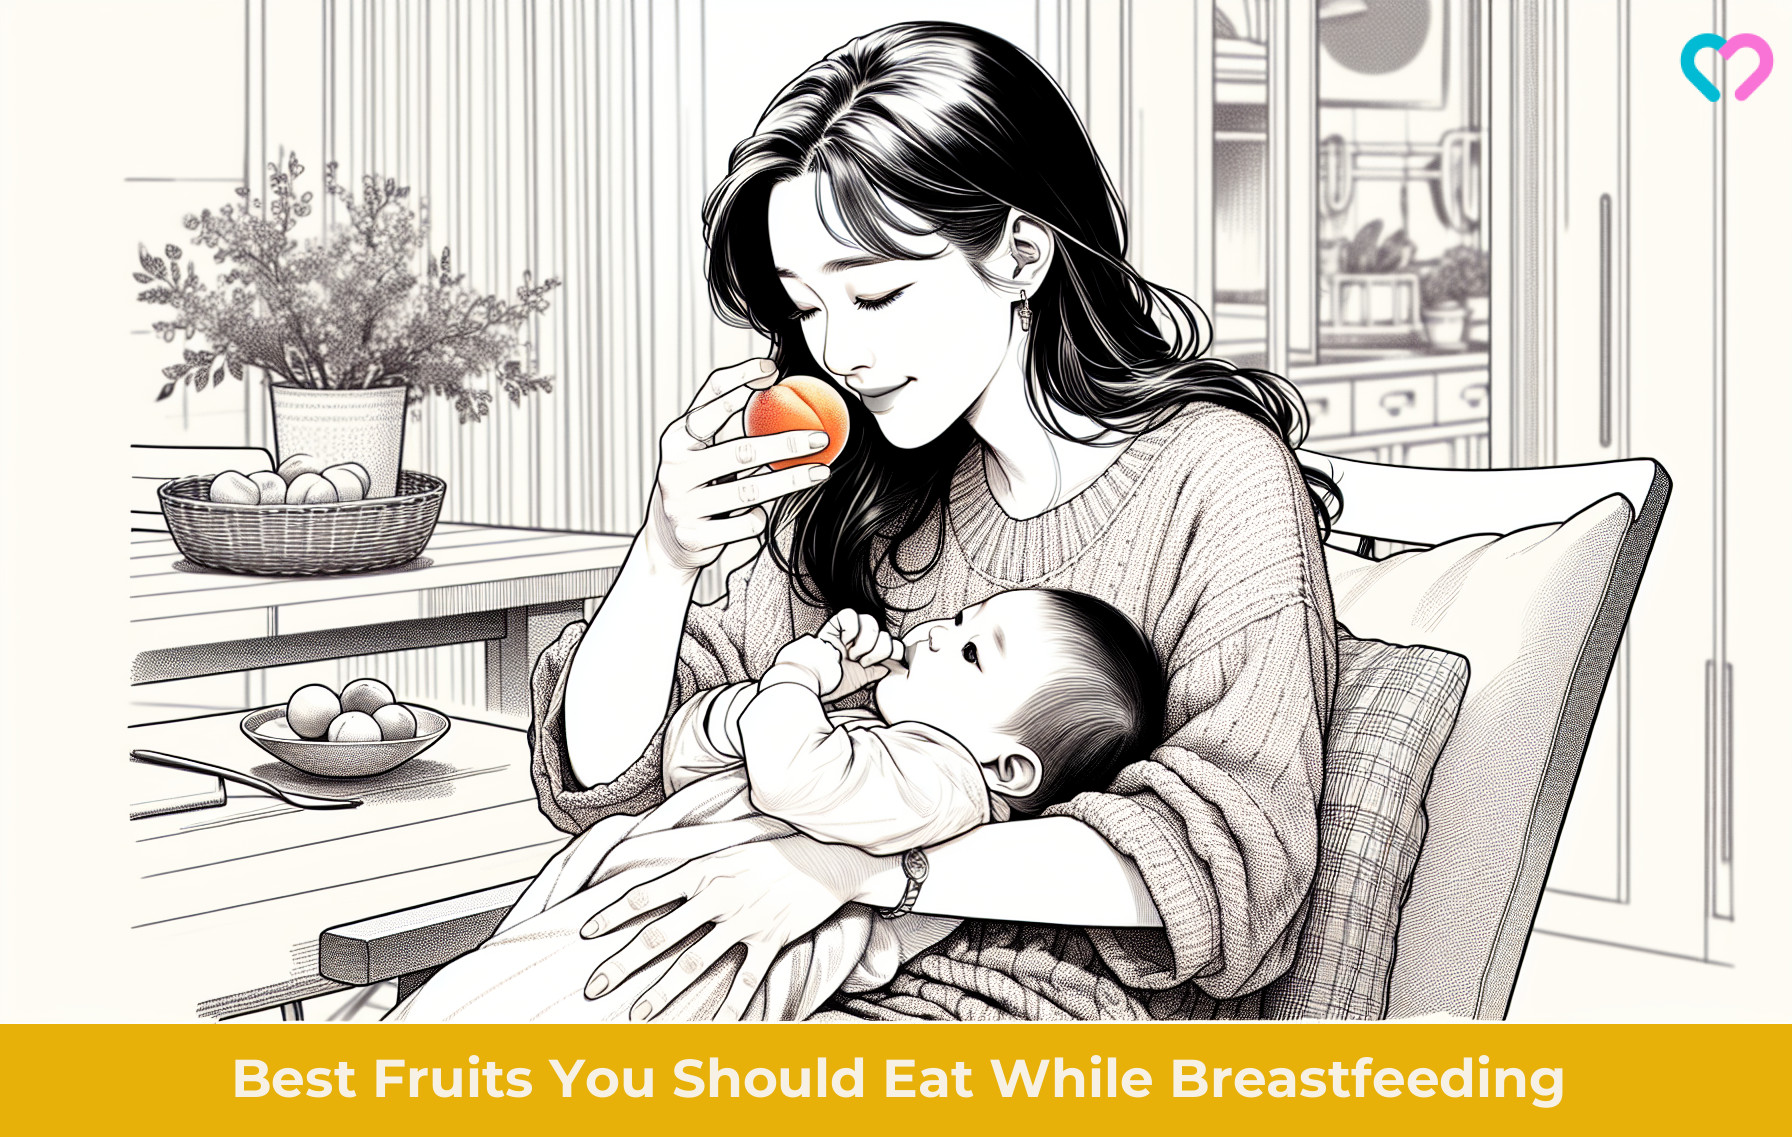 Fruits to Eat While Breastfeeding_illustration